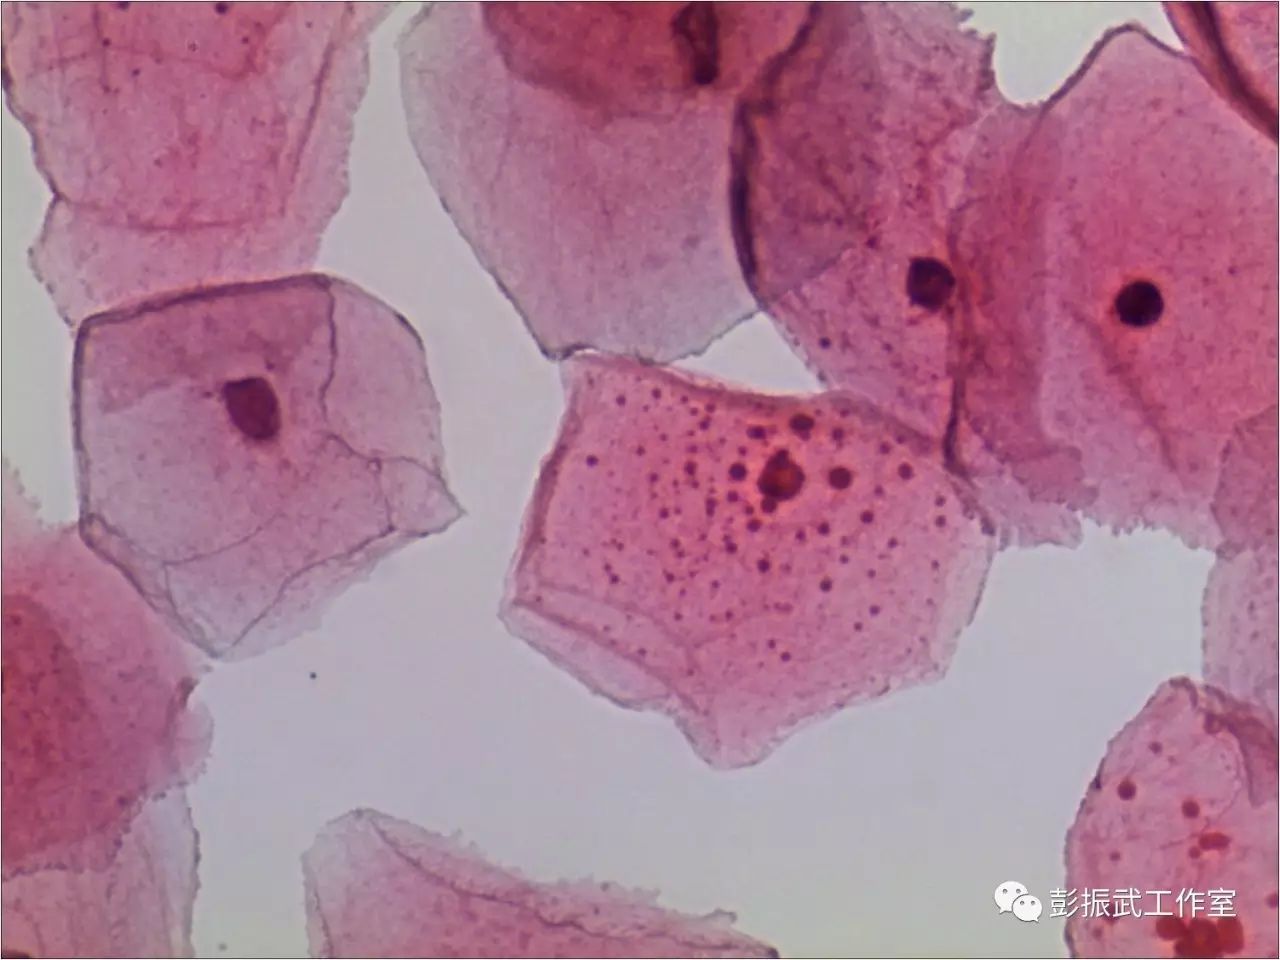 图1-1:表层鳞状上皮细胞:细胞体积较大,直径约50-60微米,多边形,在